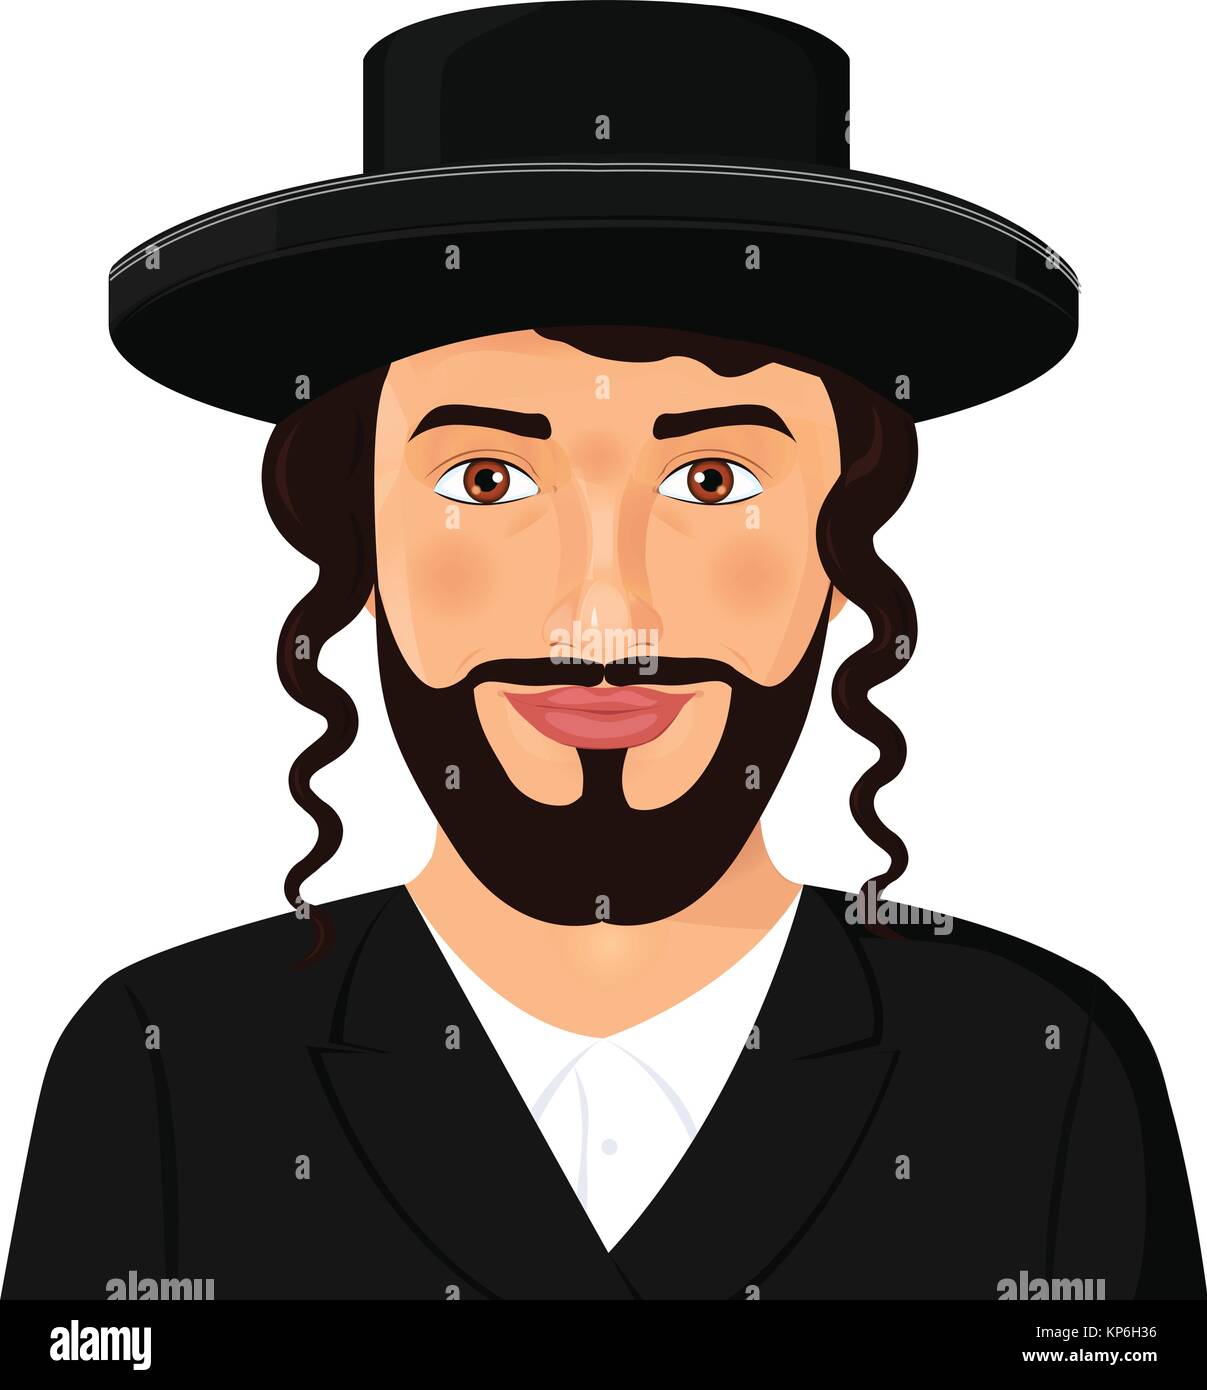 Portrait de l'homme juif orthodoxe avec hat dans un costume noir.  Jérusalem. Israël. Style Avatar vector illustration isolé sur fond blanc  Image Vectorielle Stock - Alamy